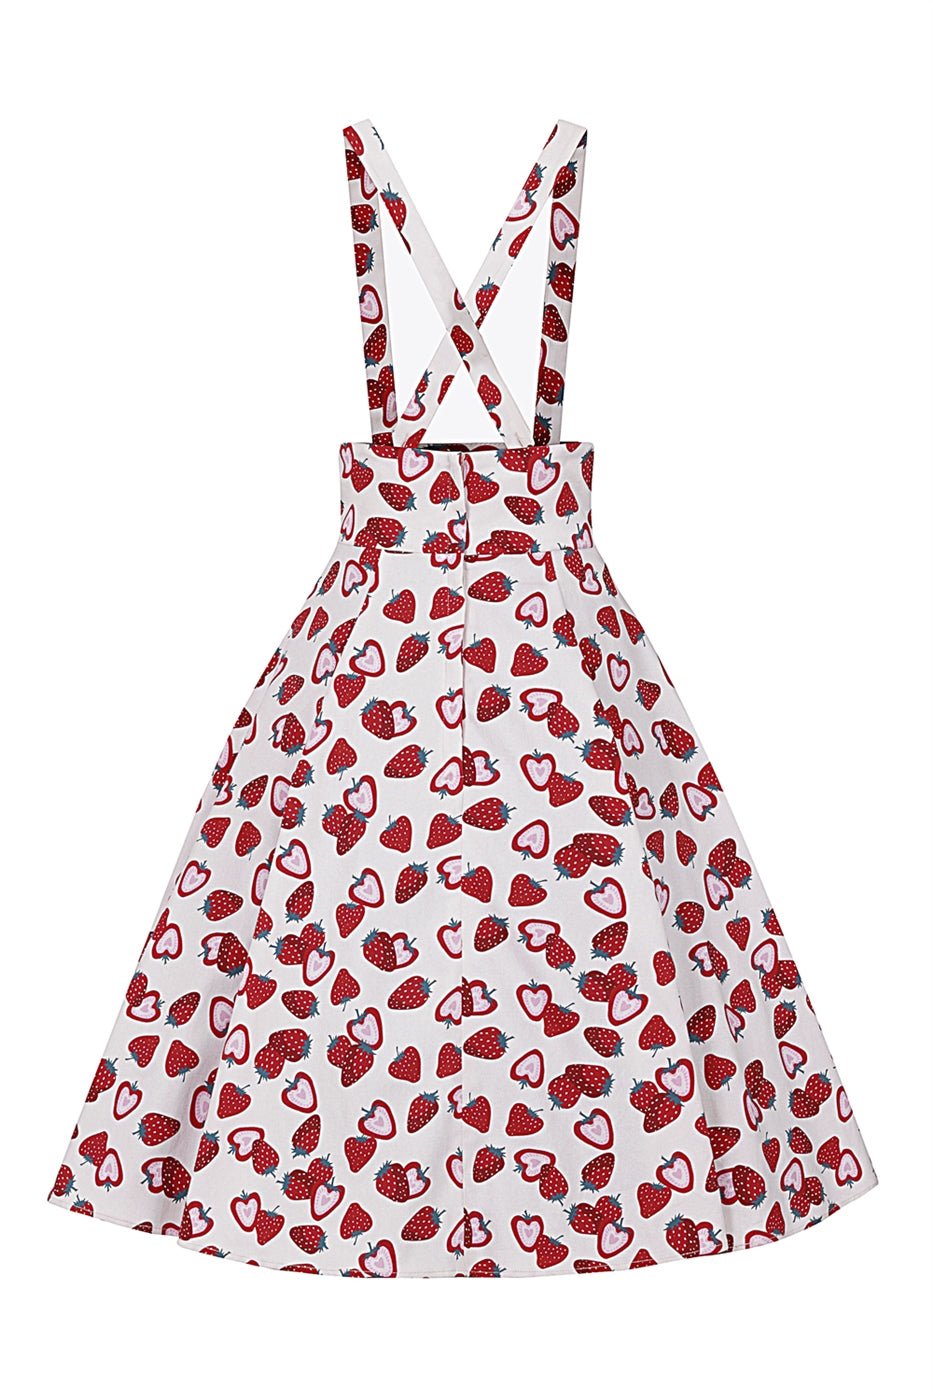 Alexa Strawberry Swing Skirt - Rockamilly-Skirts & Shorts-Vintage